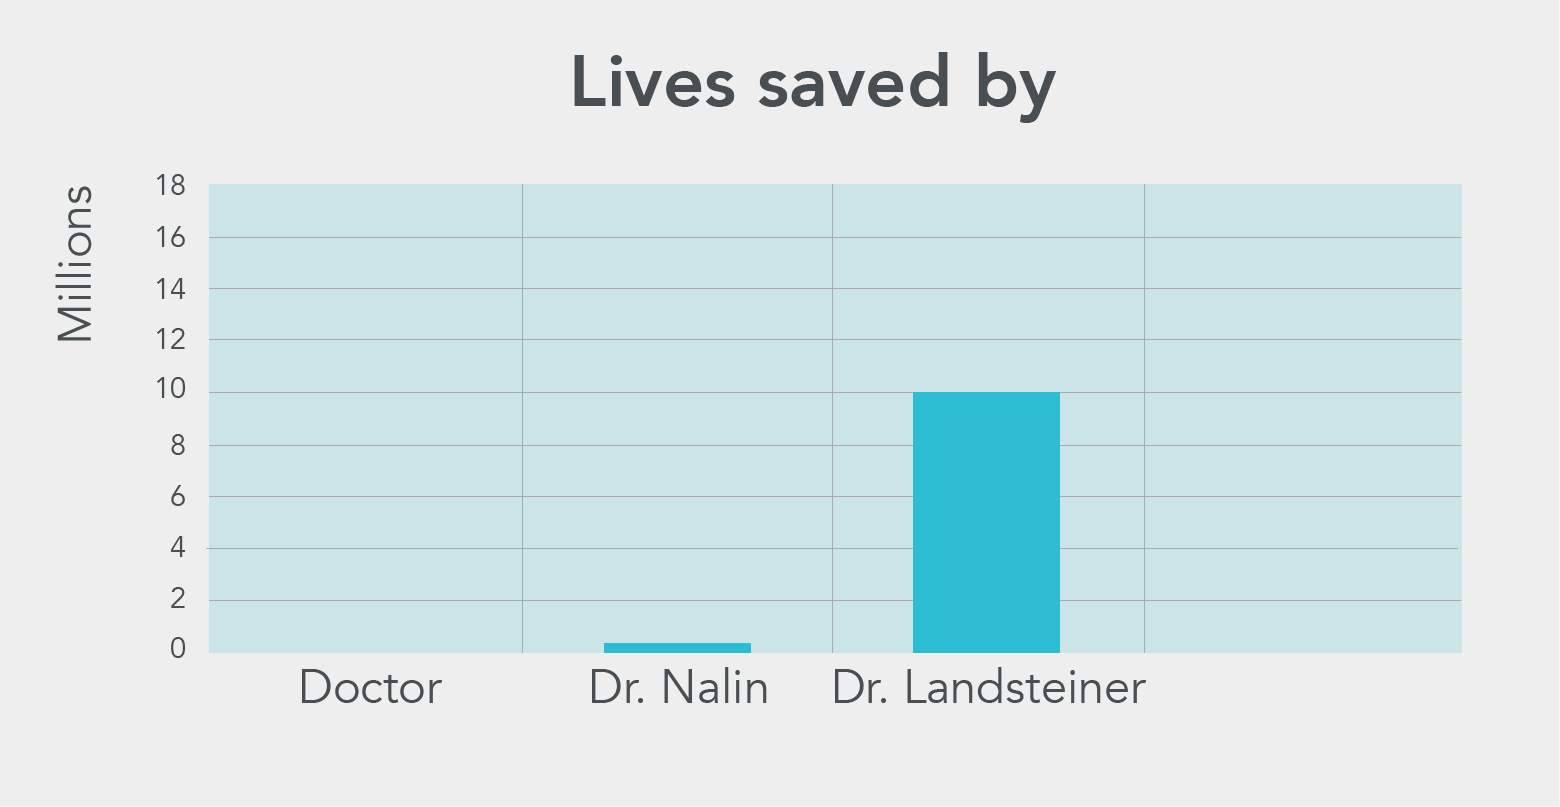 Lives saved by Dr Landsteiner